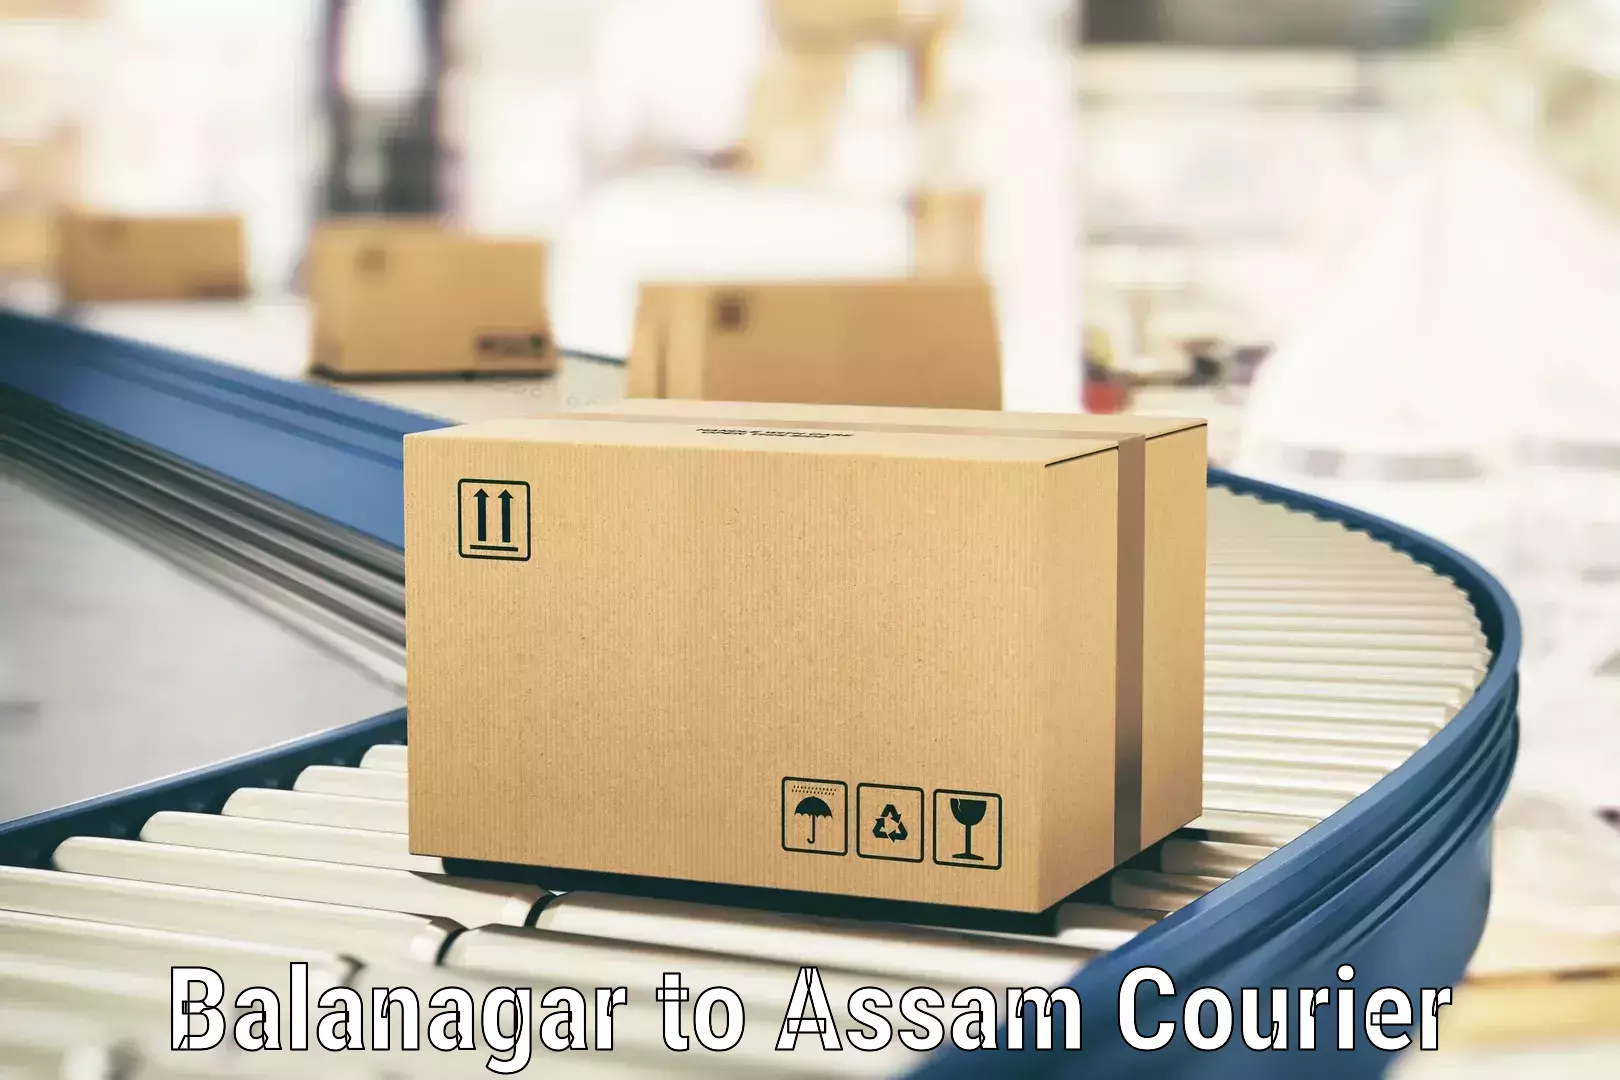 Courier service partnerships Balanagar to Assam